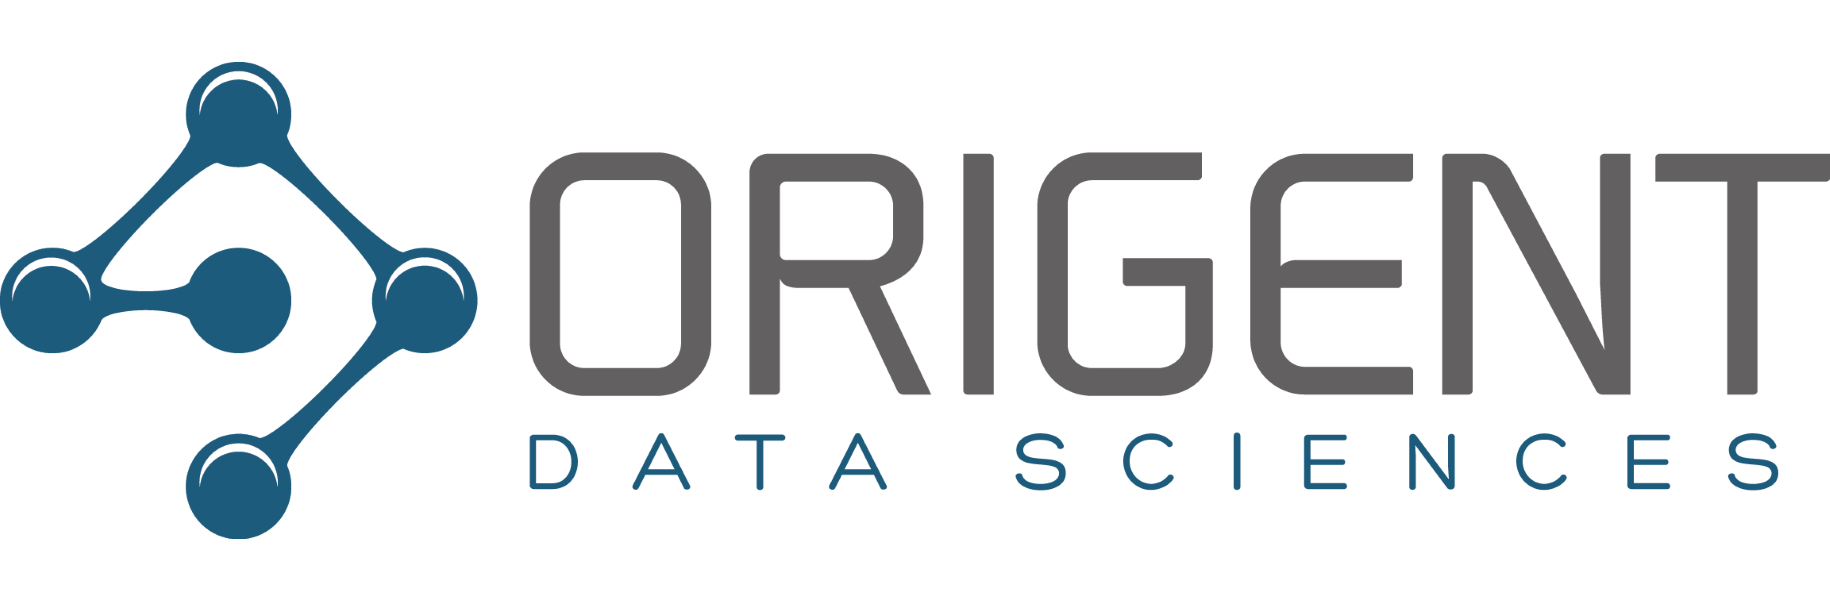 Origent Data Sciences, Inc.